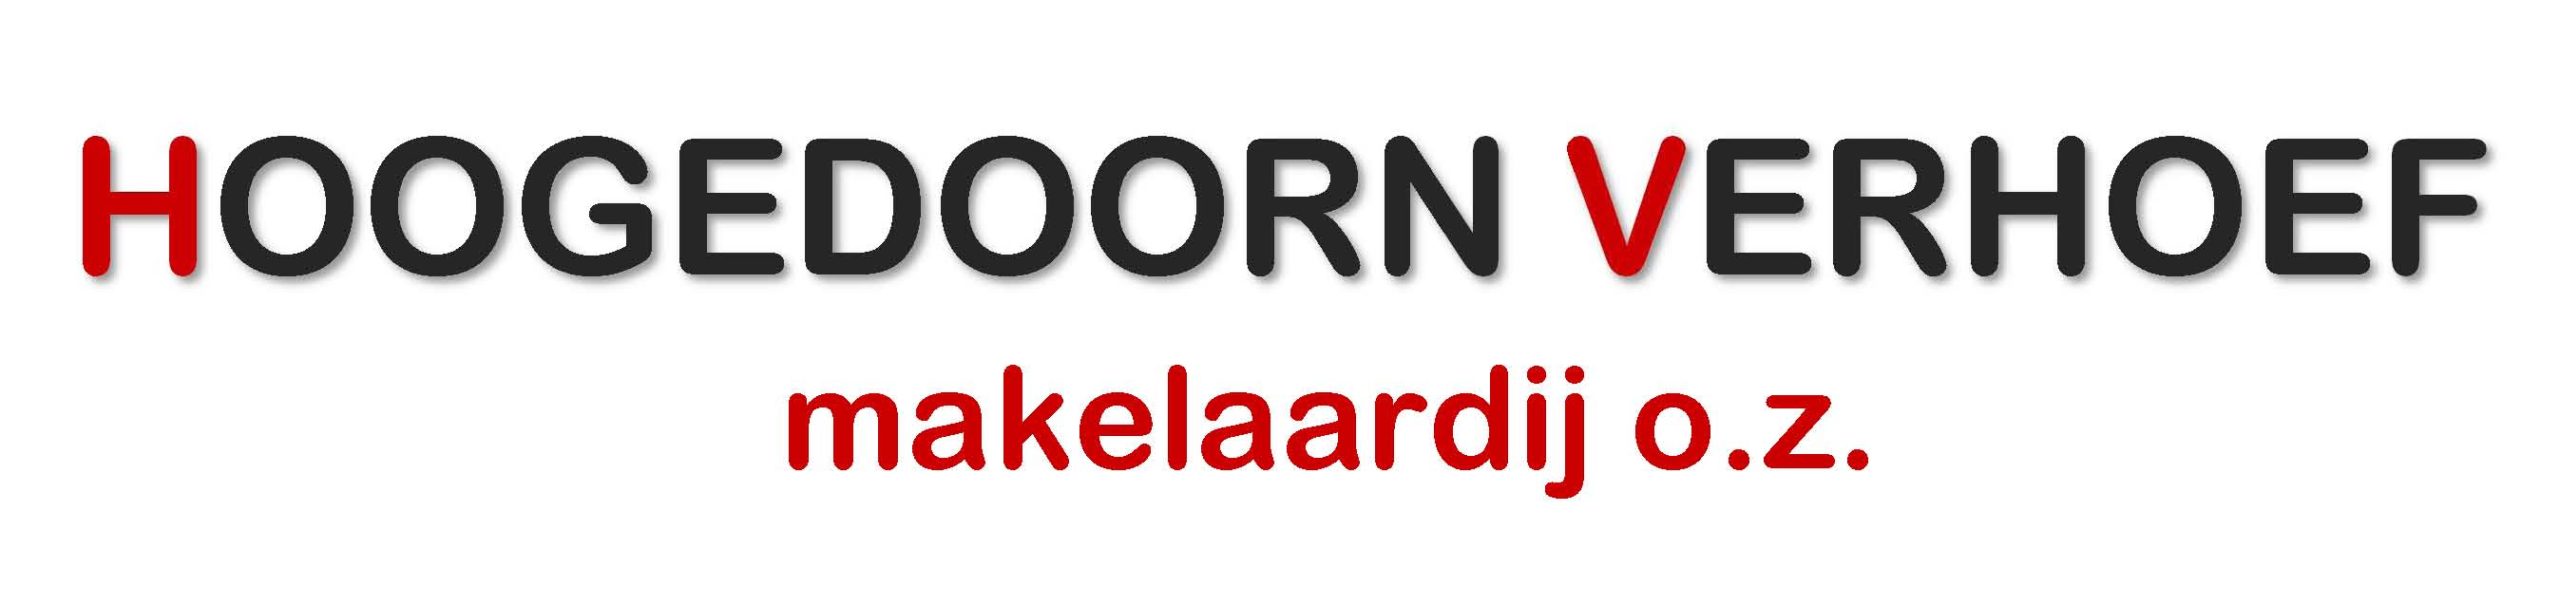 Hoogedoorn-Verhoef Makelaardij o.g.